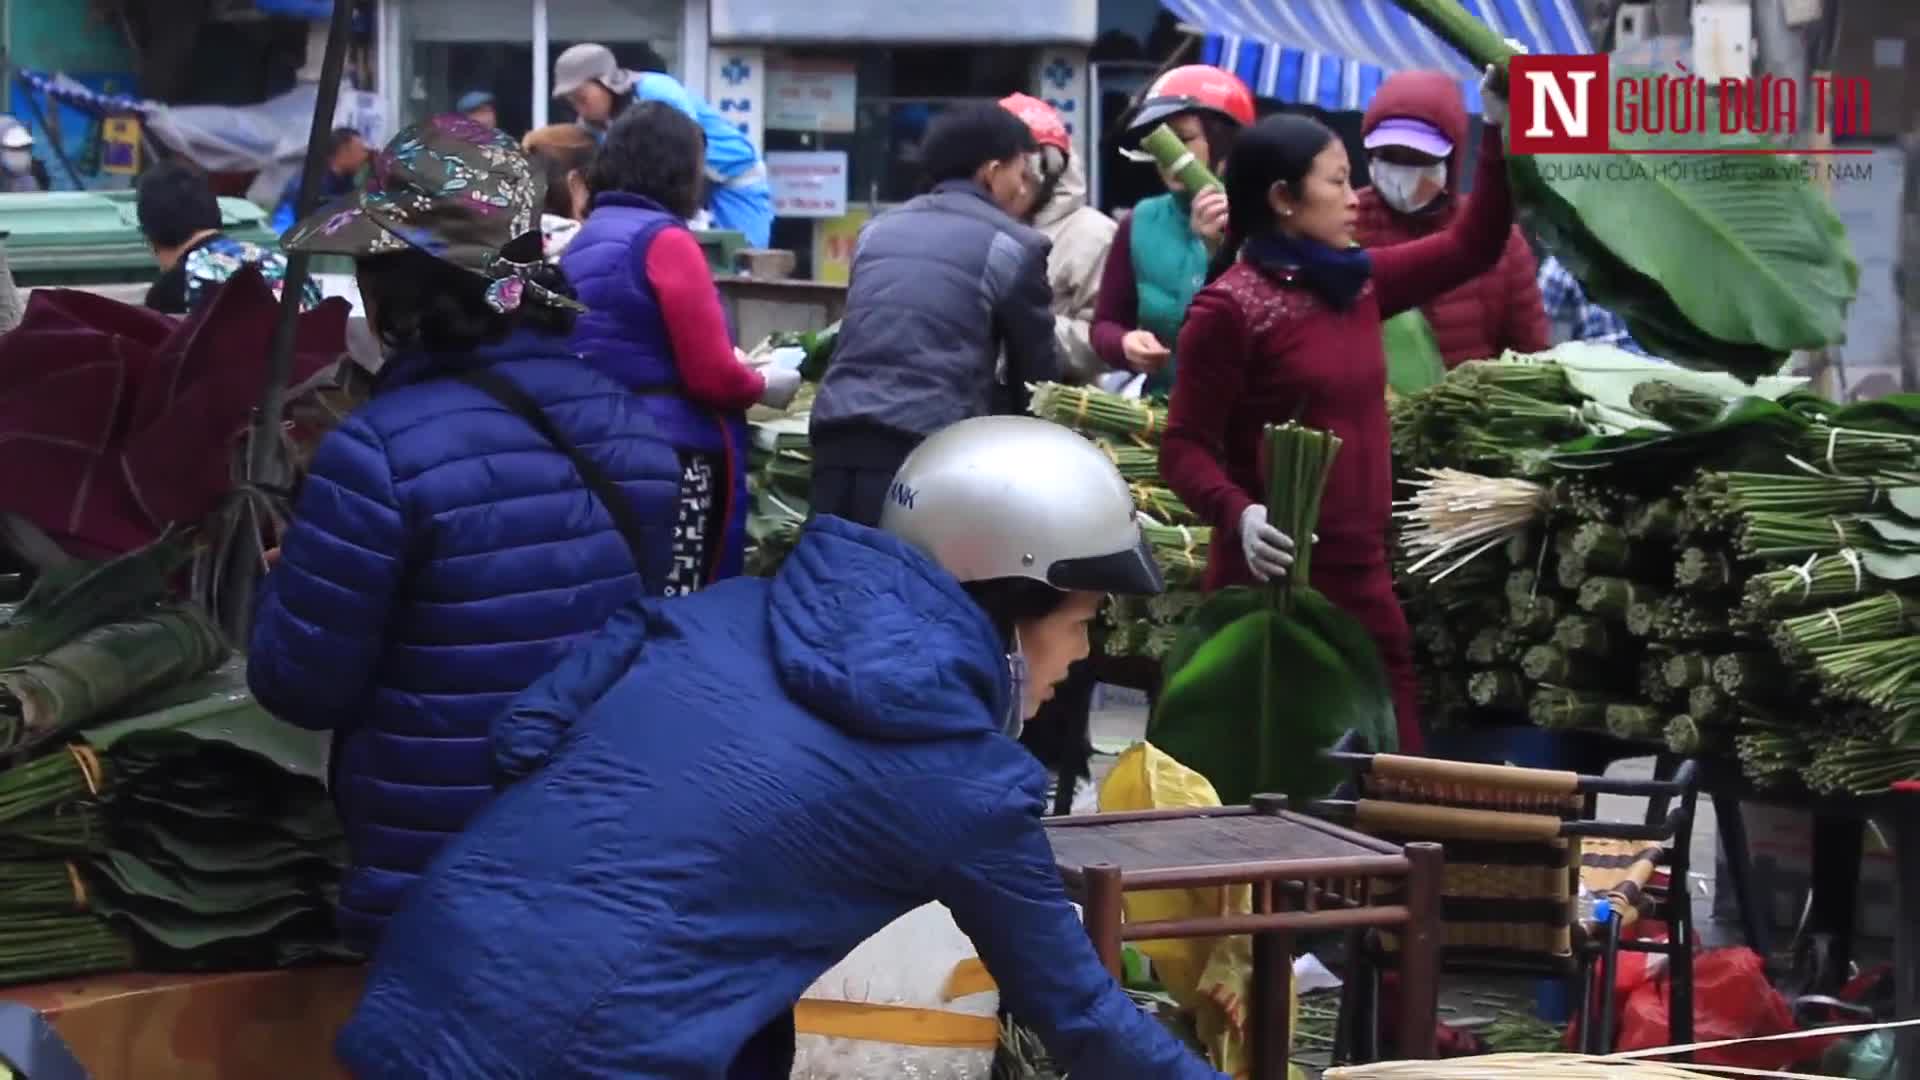 Chợ lá dong cổ nhất Hà Nội